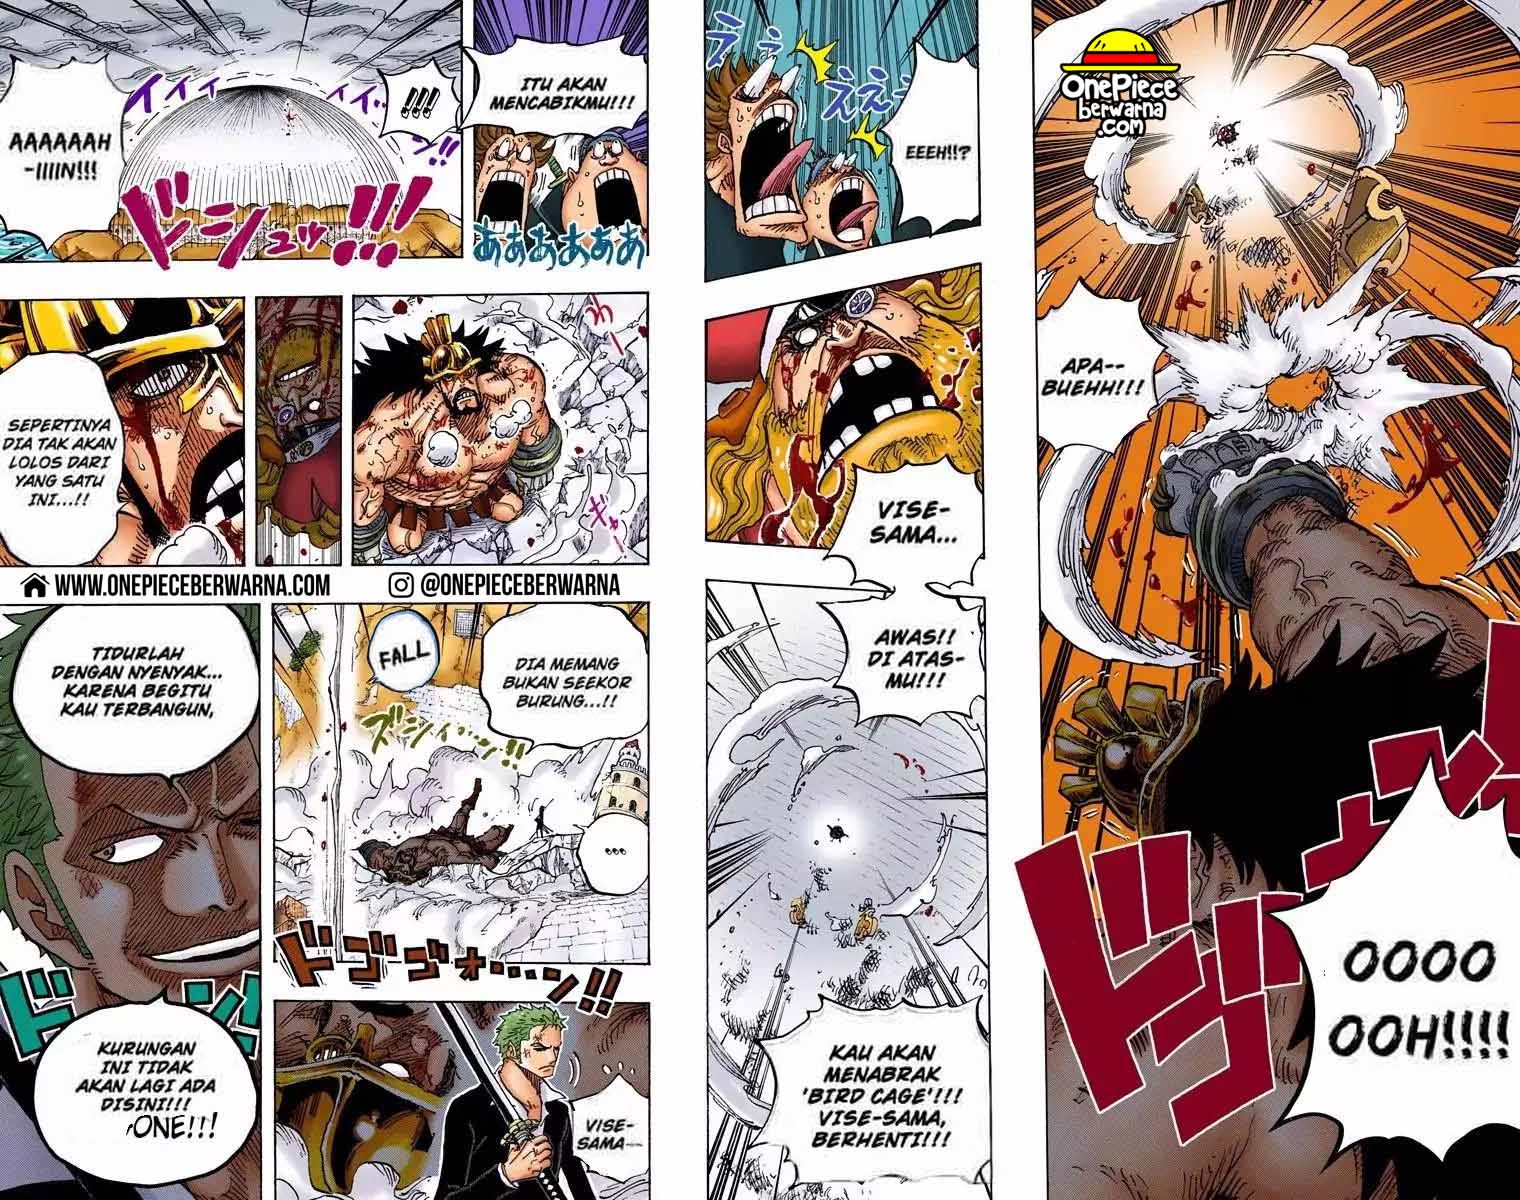 One Piece Berwarna Chapter 770